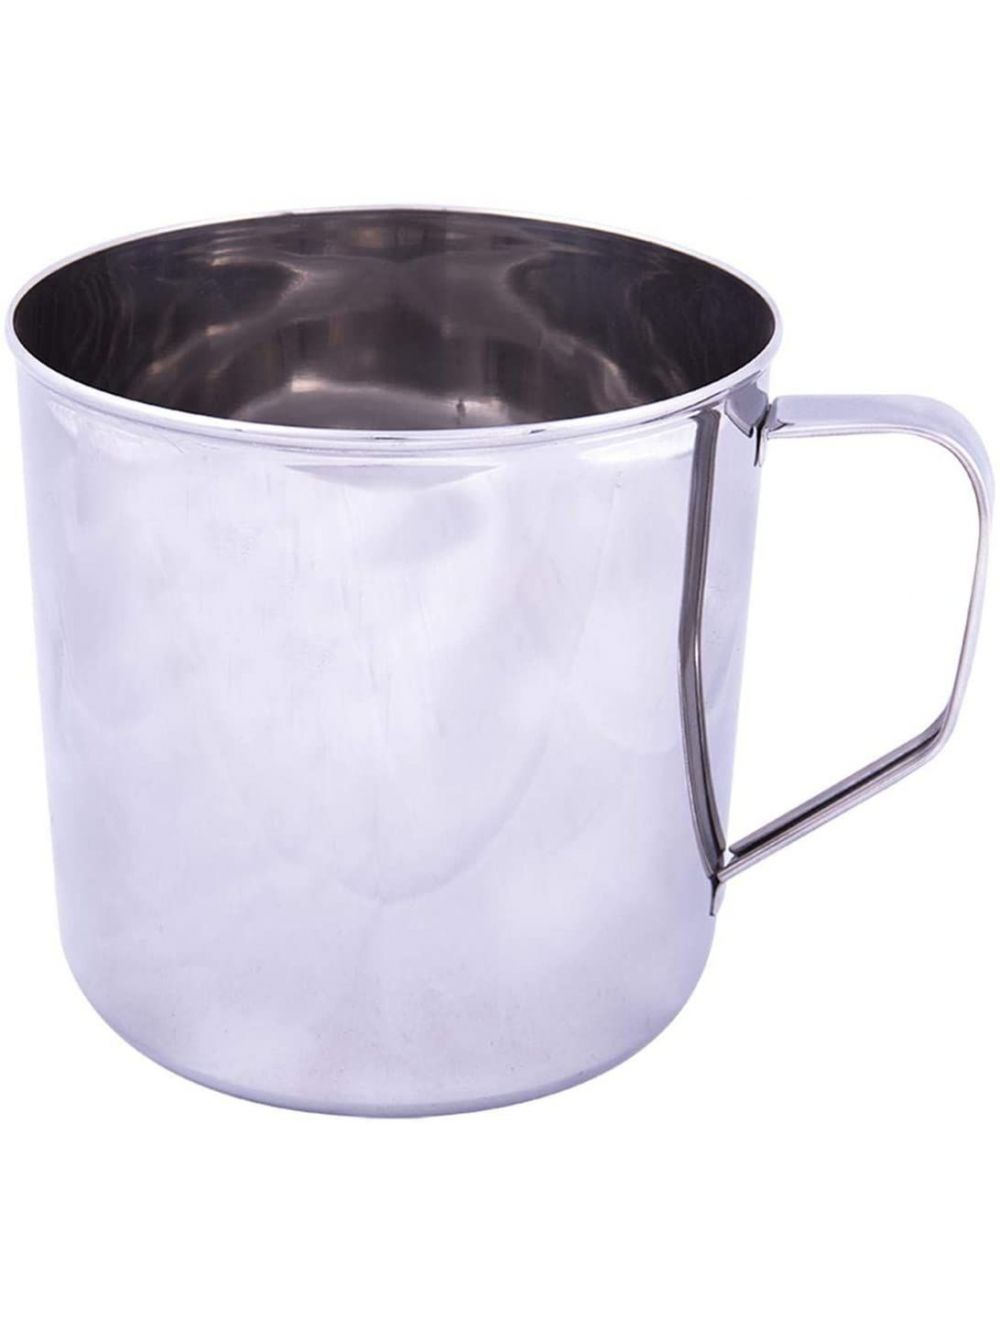 Raj 9.5 cm Stainless Steel Mug, Silver-NM0009